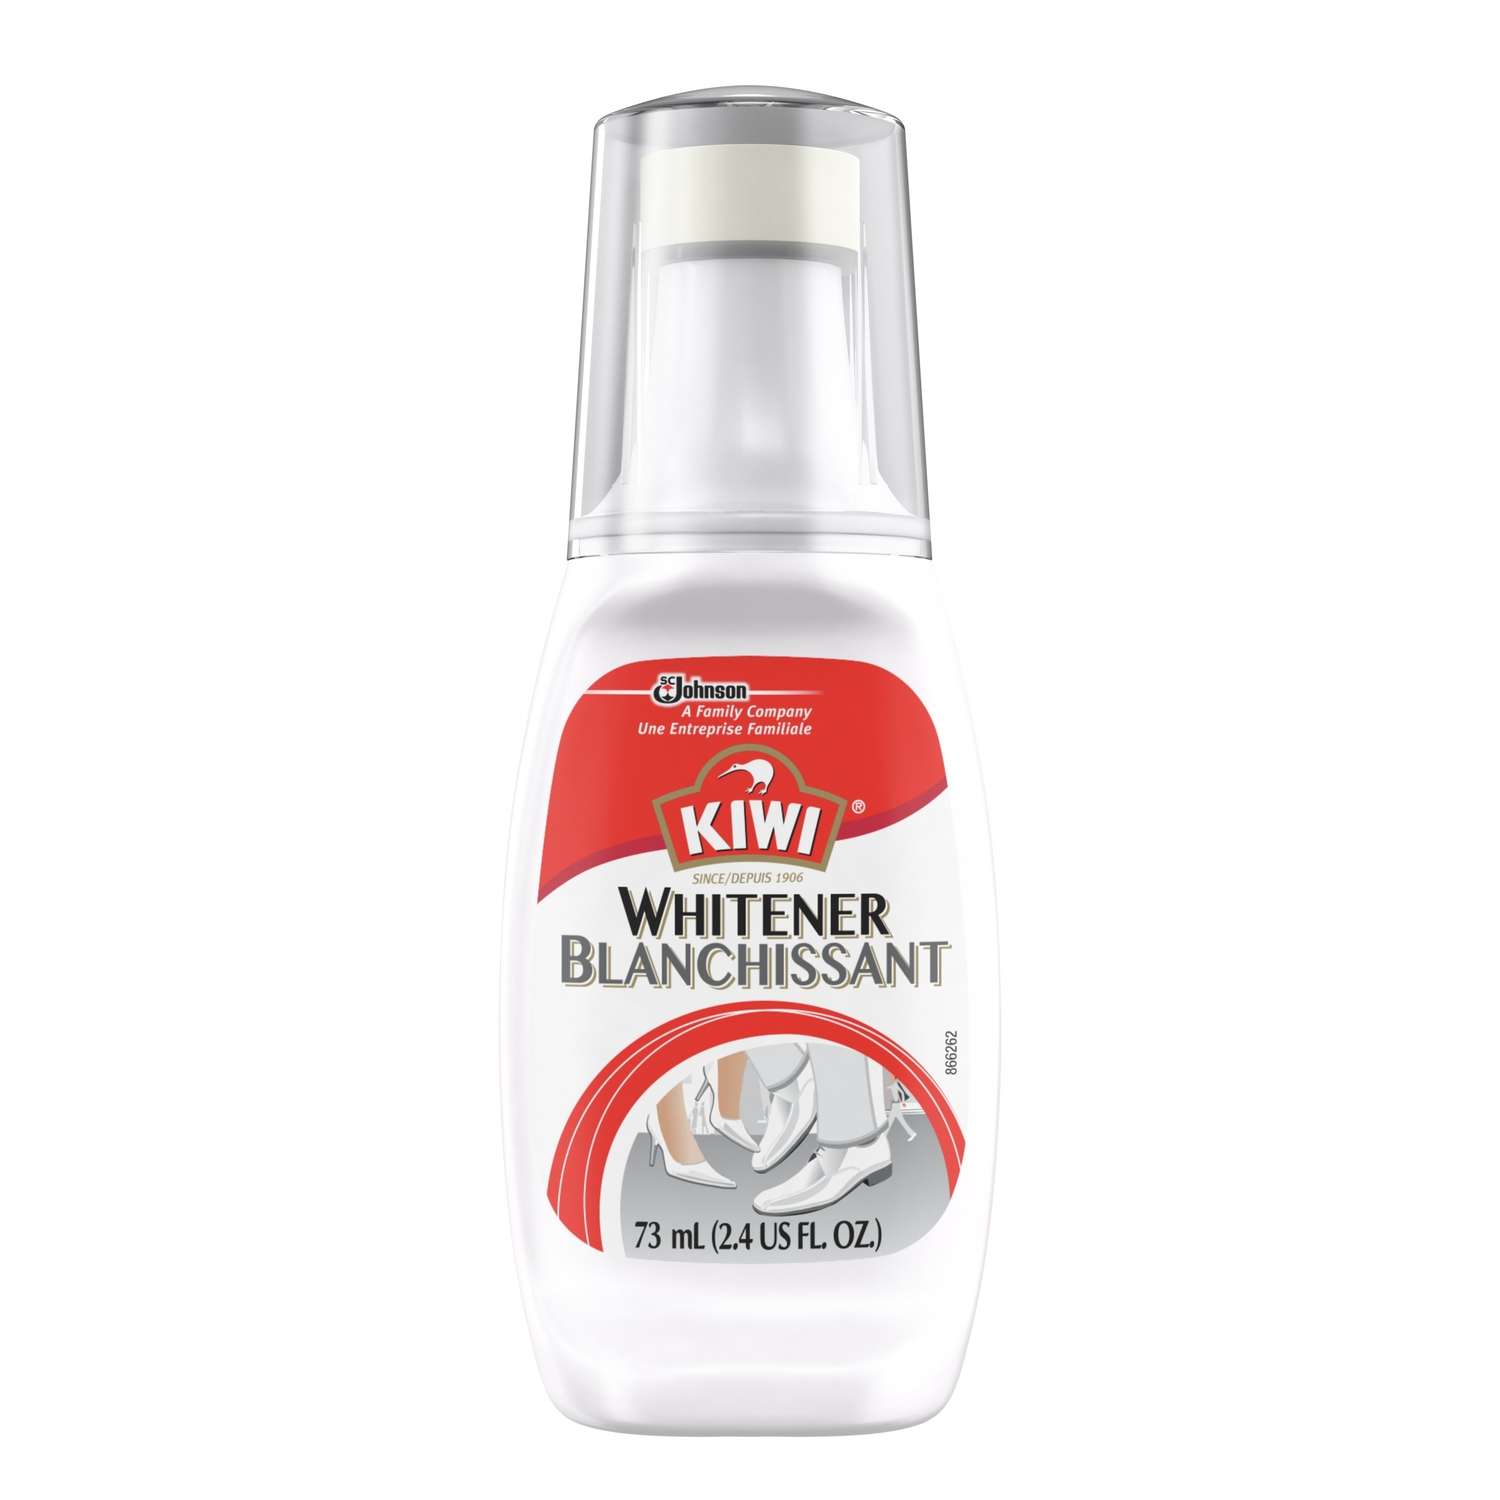 Buy KIWI White Shoe Polish and Shine